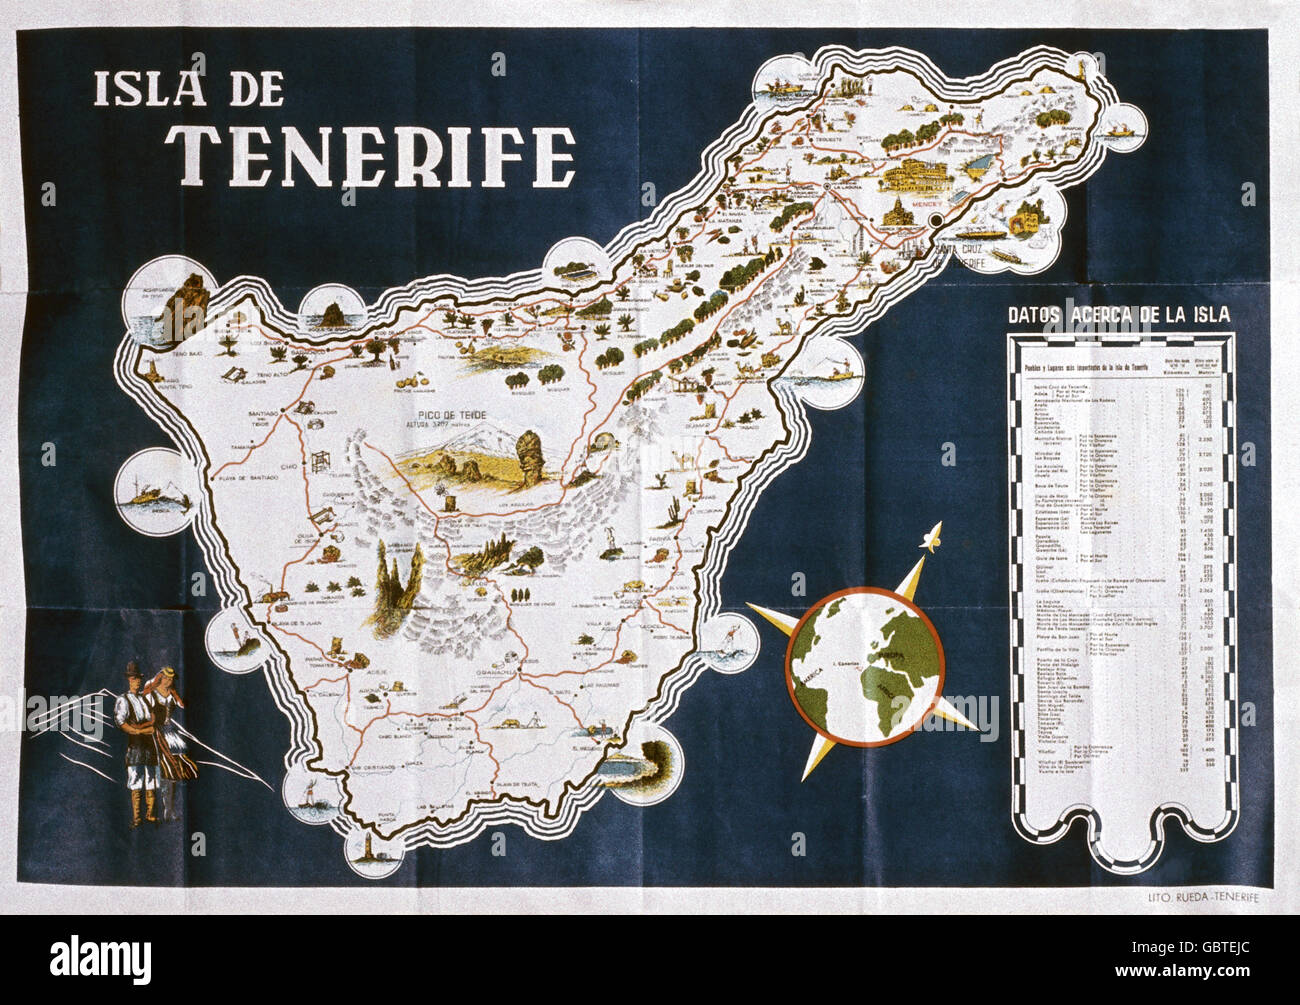 Geografia / viaggio, Spagna, Isole Canarie, Tenerife, mappa topografica, 1958, diritti-aggiuntivi-clearences-non disponibile Foto Stock